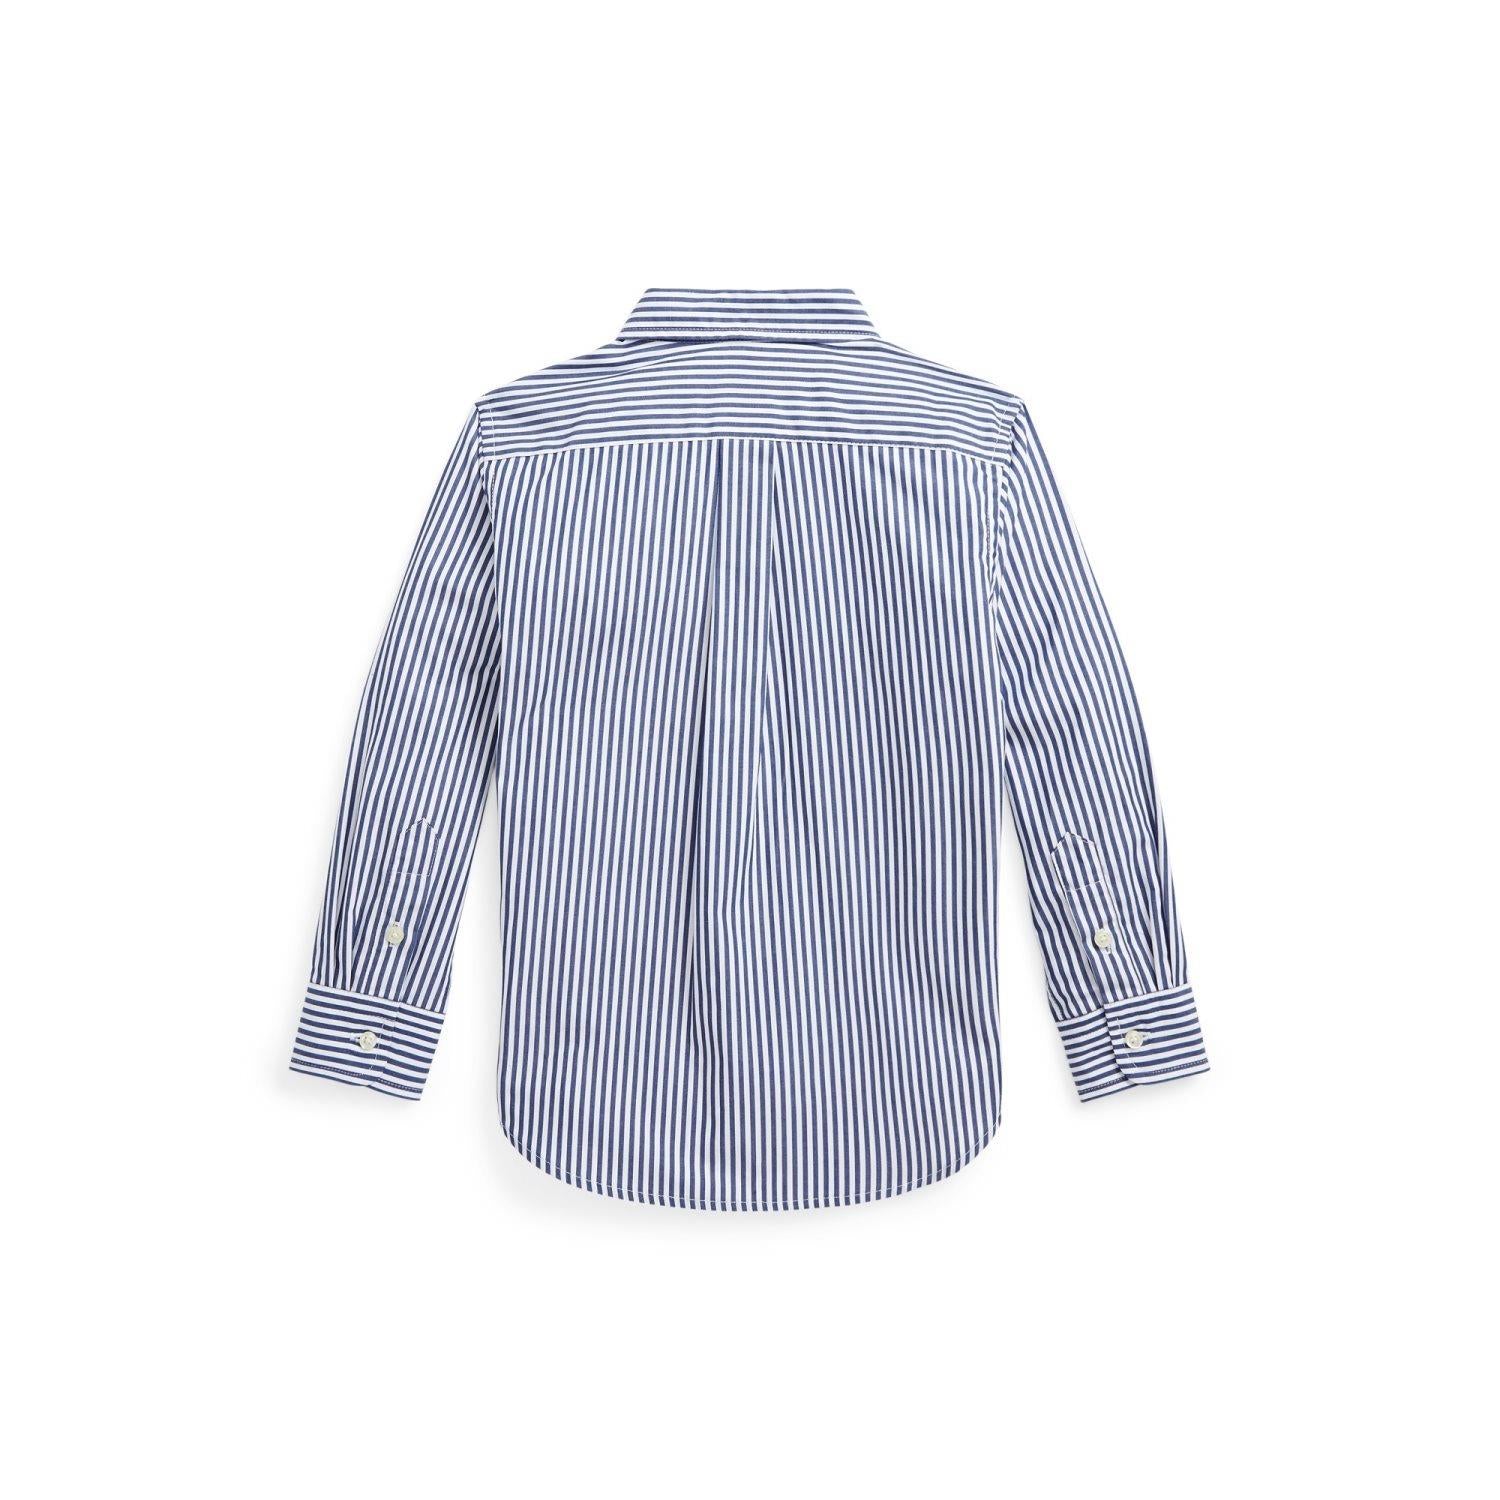 RALPH LAUREN 2-7År Striped Cotton Poplin Shirt Striper